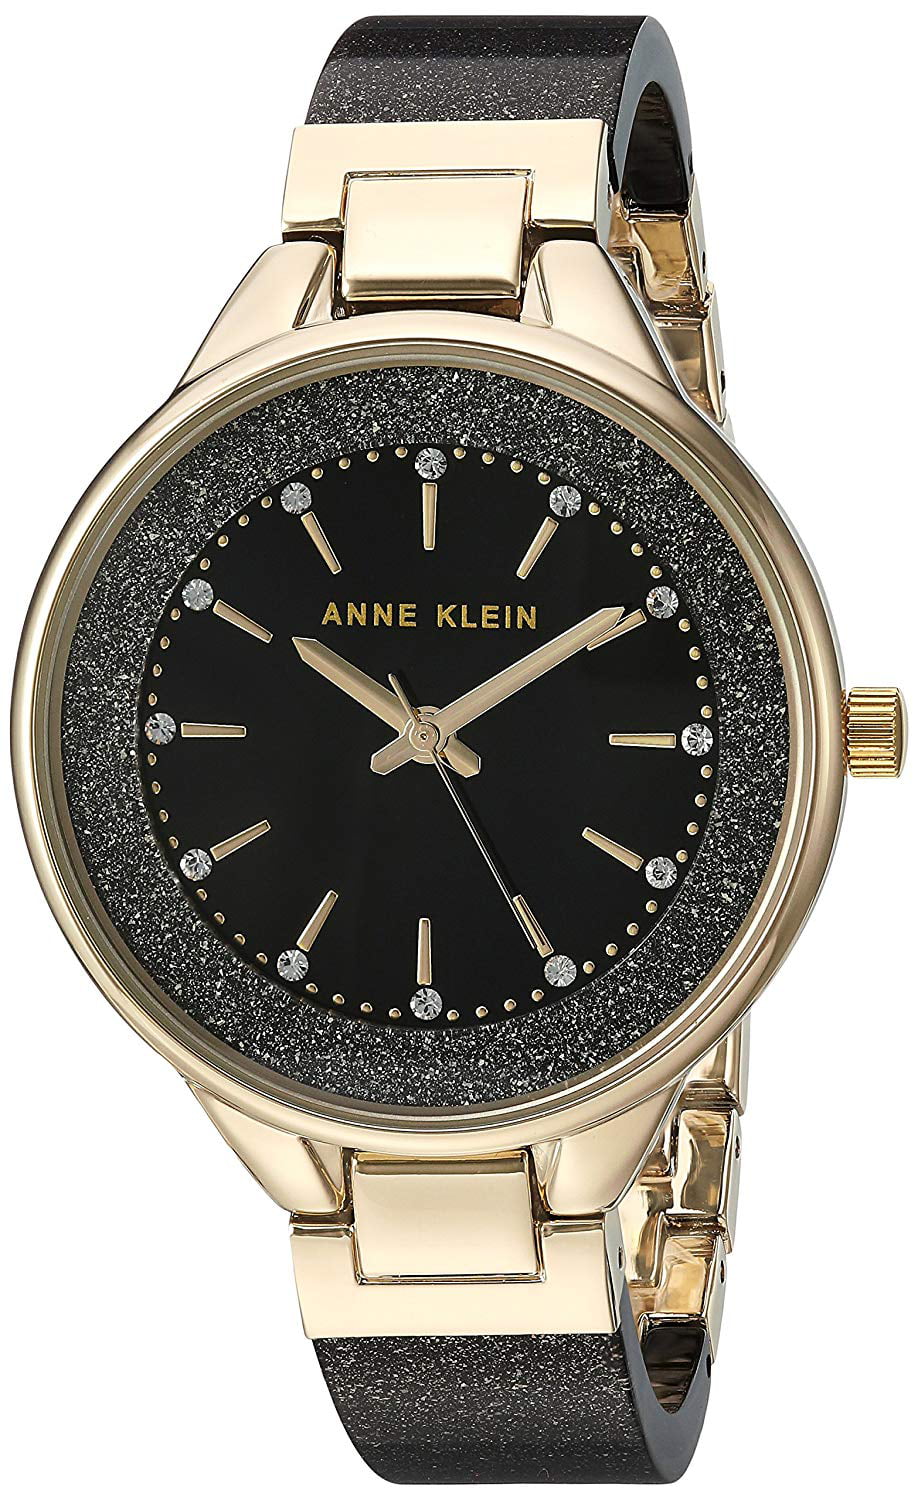 Anne Klein - Anne Klein Resin Ladies Watch AK-1408BKLE - Walmart.com